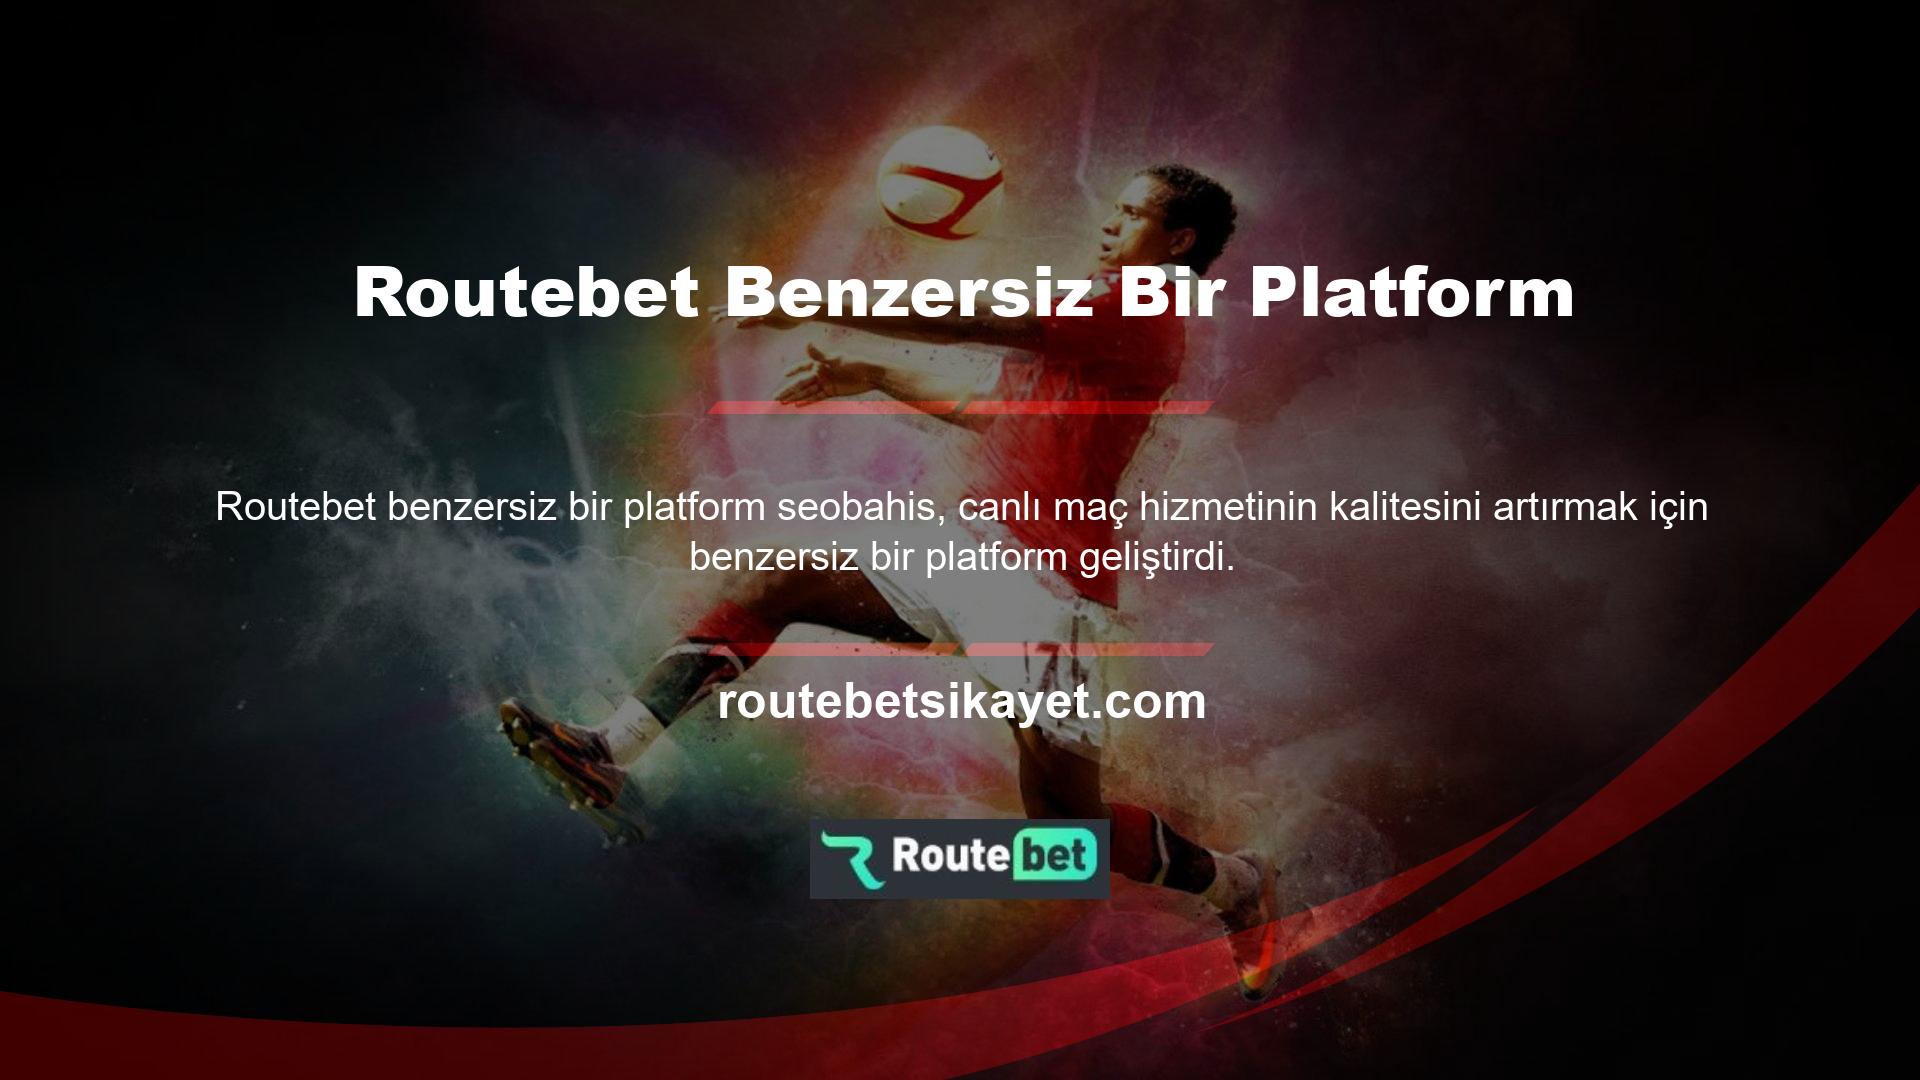 Routebet TV adlı siteye giren kişiler şu anda birçok oyunun gerçekleştiğini görebiliyor